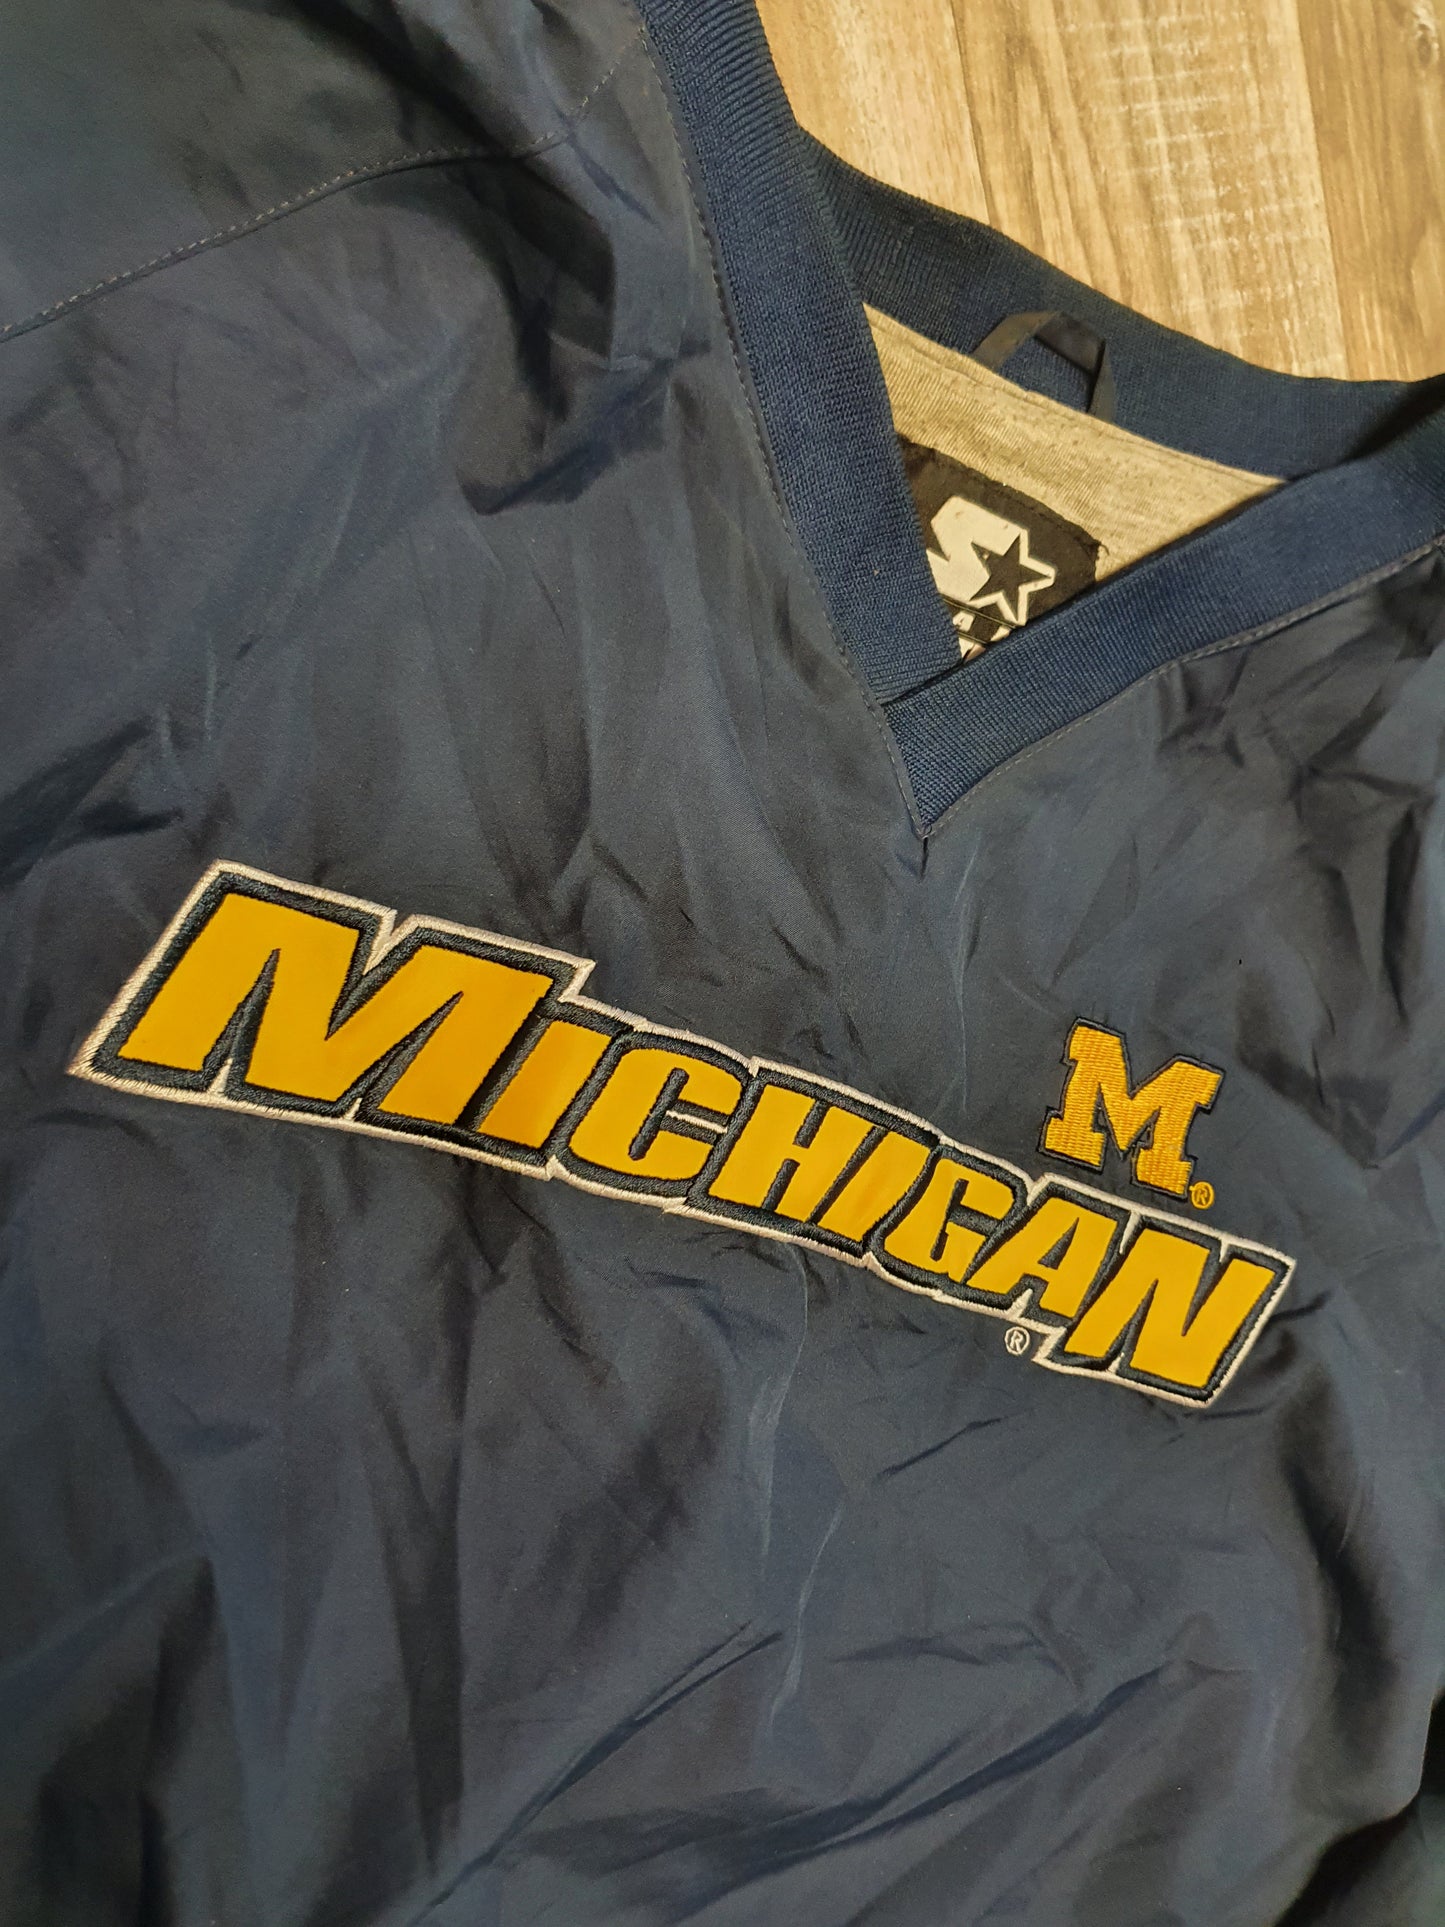 Michigan Wolverines Warm Up Size XL